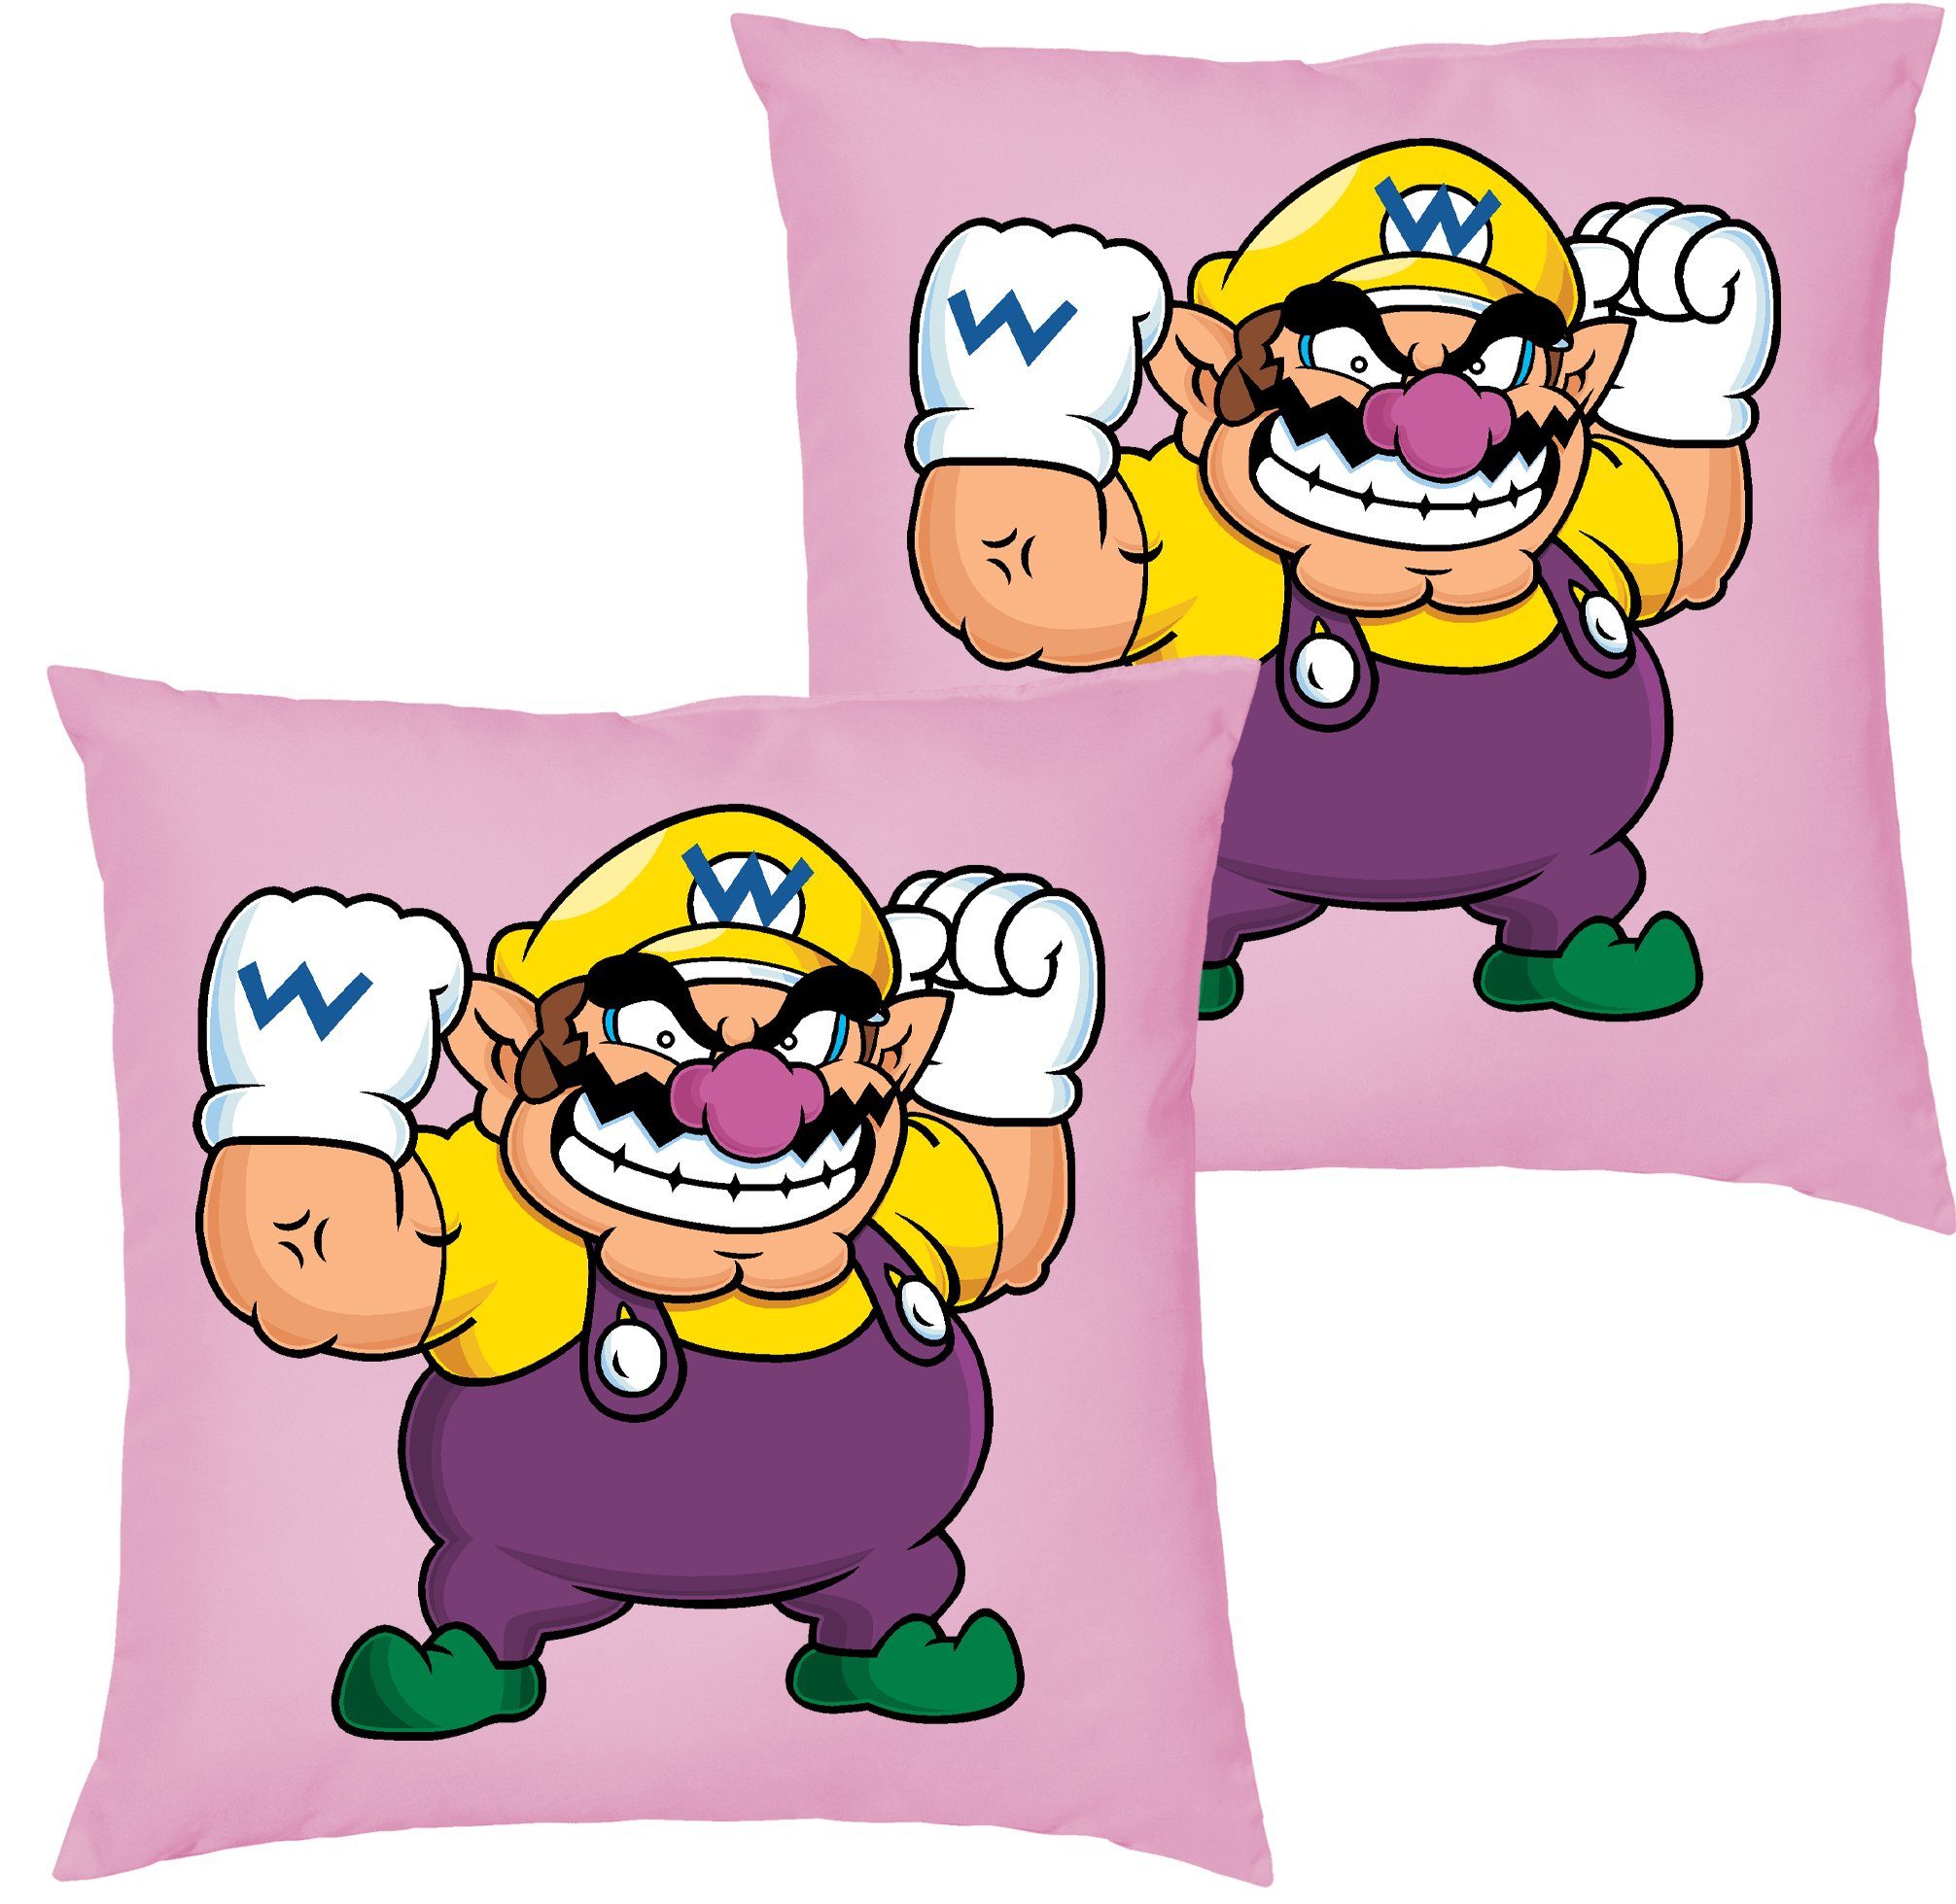 Gaming Super Füllung Mario mit Yoshi Blondie Dekokissen Super & Wario Gamer Luigi Konsole, Kissen Retro Brownie